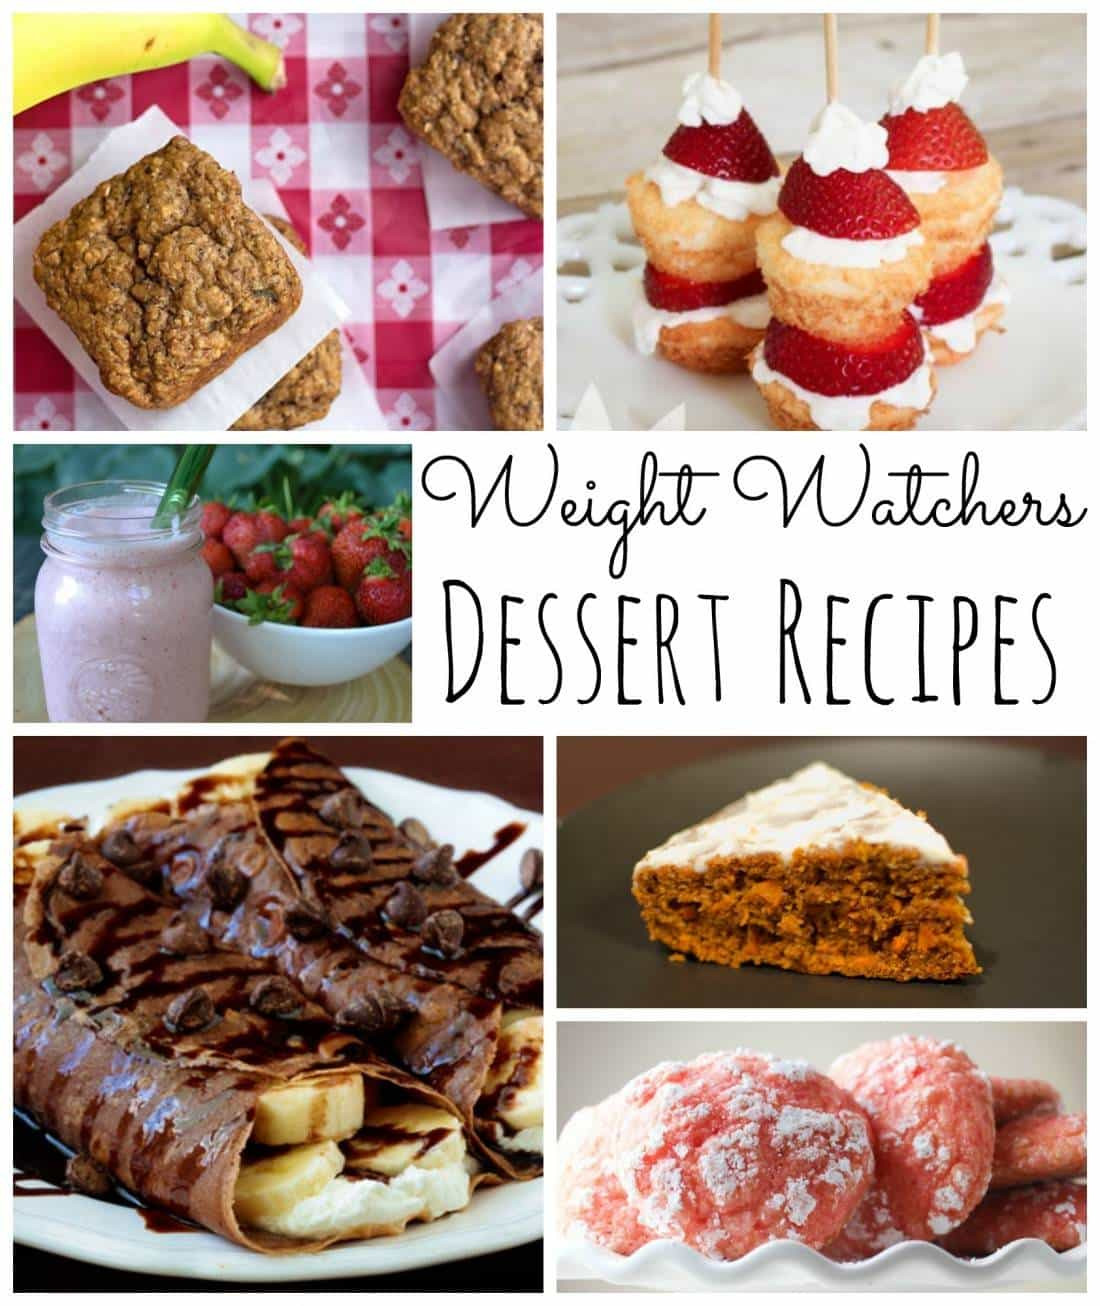 Weight Watchers Desserts In Stores
 The Best Weight Watcher Dessert Recipes